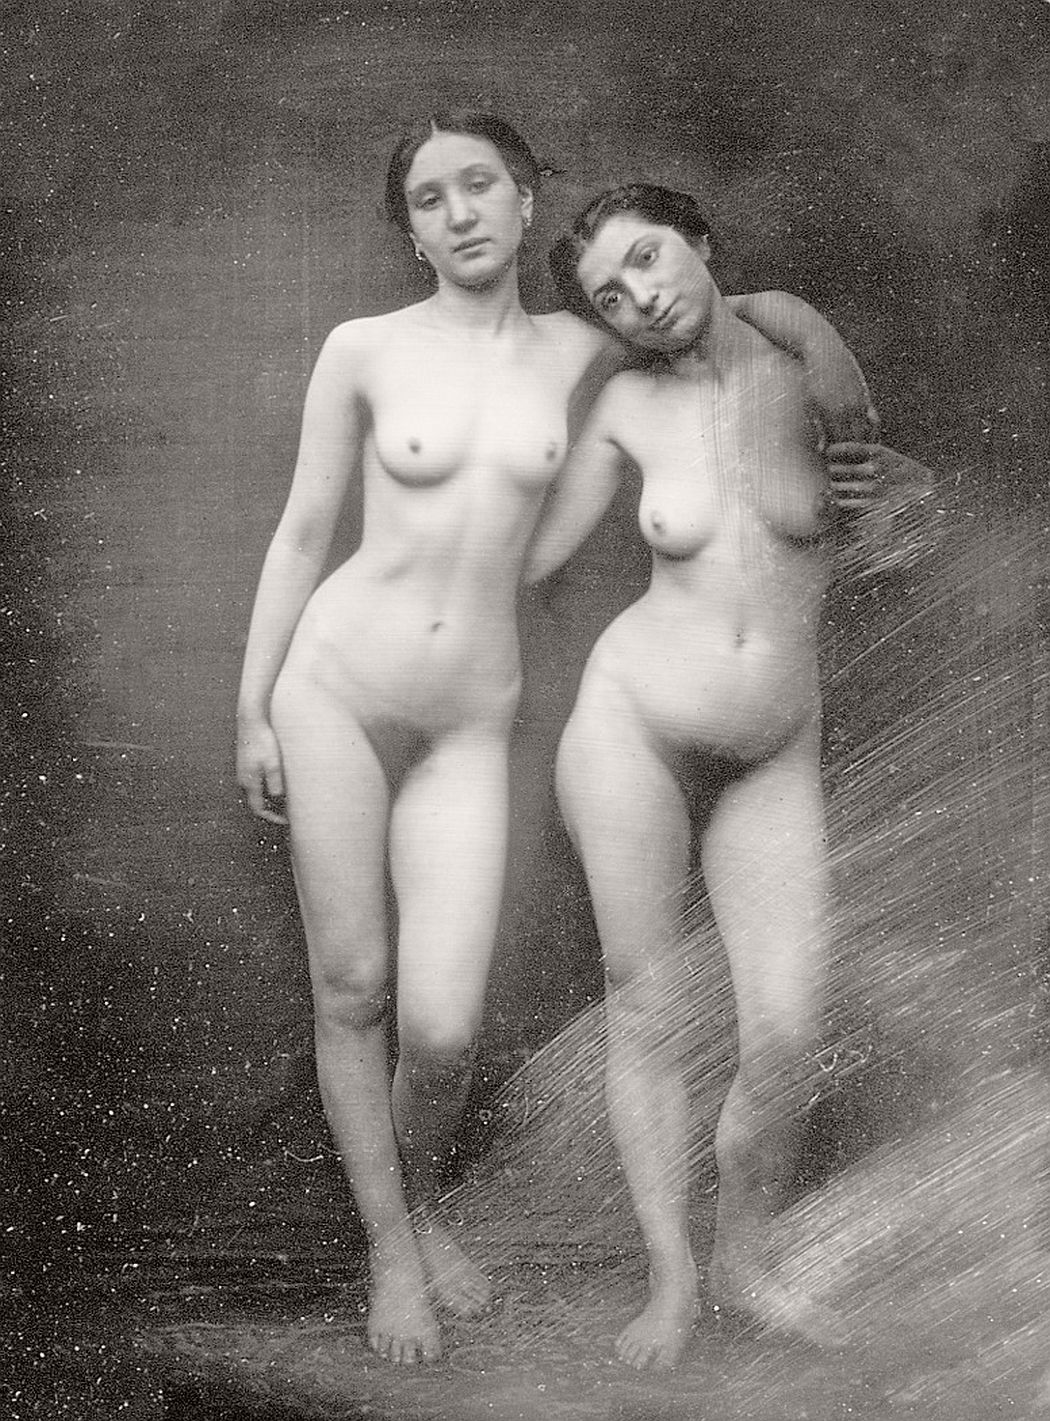 Лесбийская эротика в ретро фотографиях (1880-е годы)